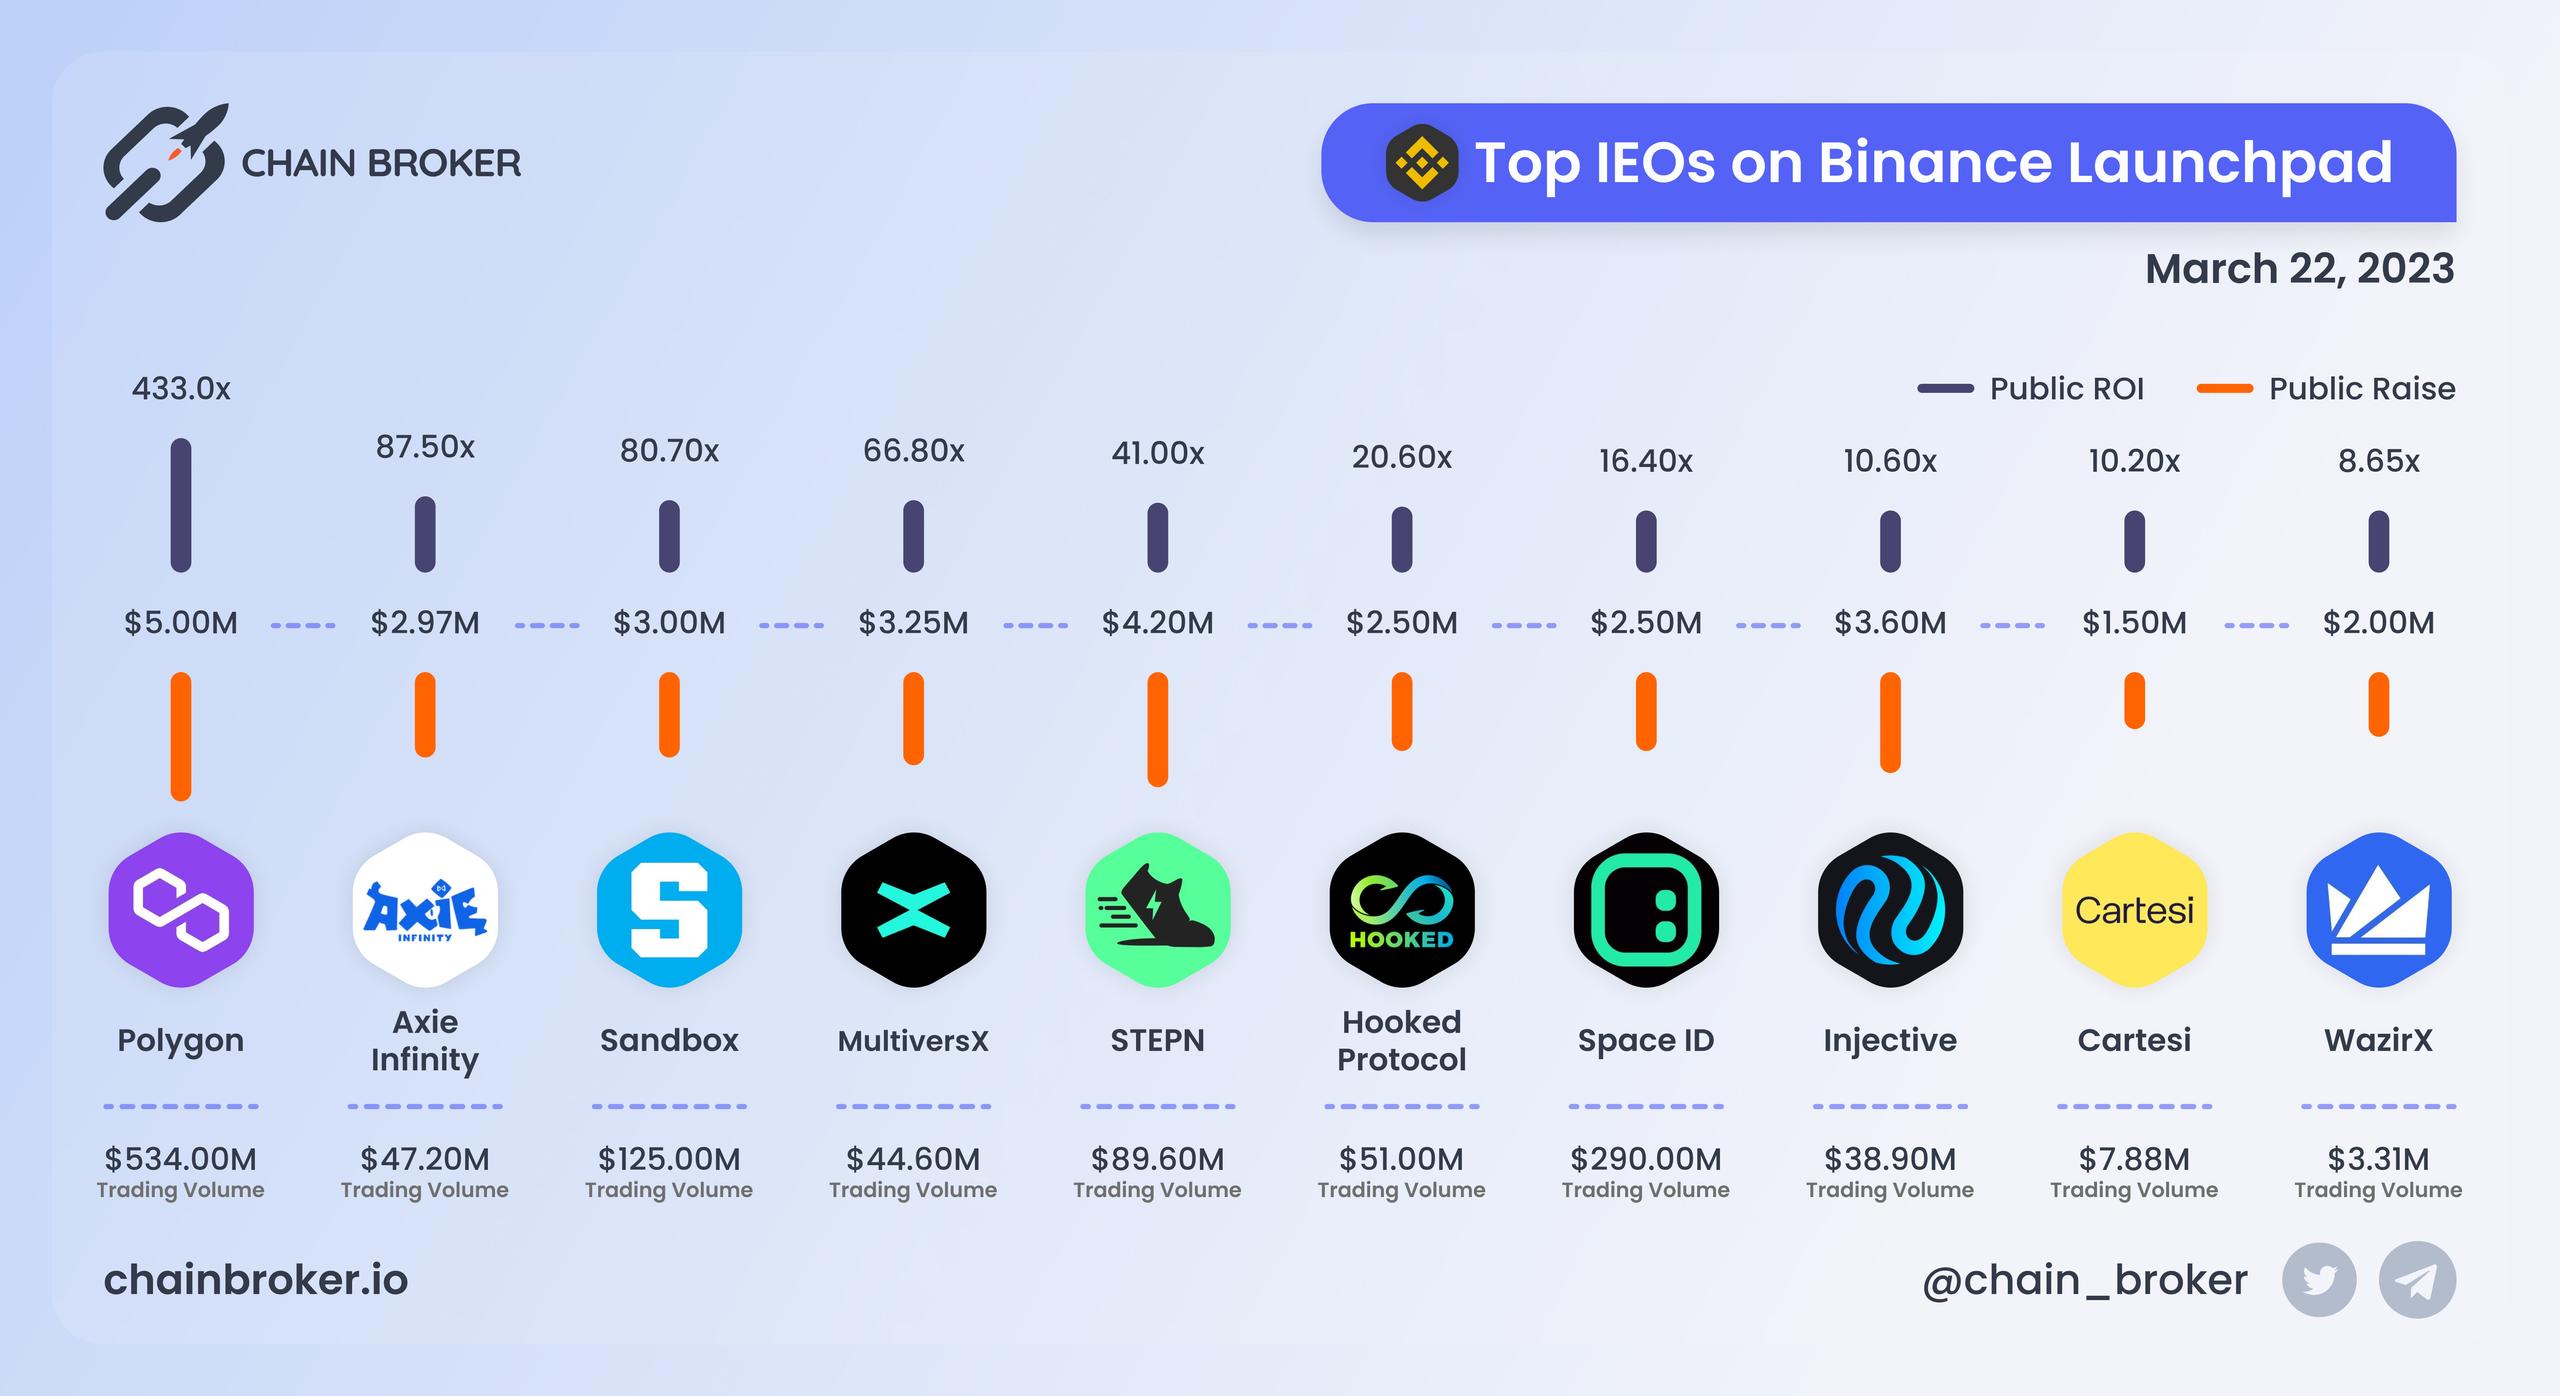 Top IEOs on Binance Launchpad